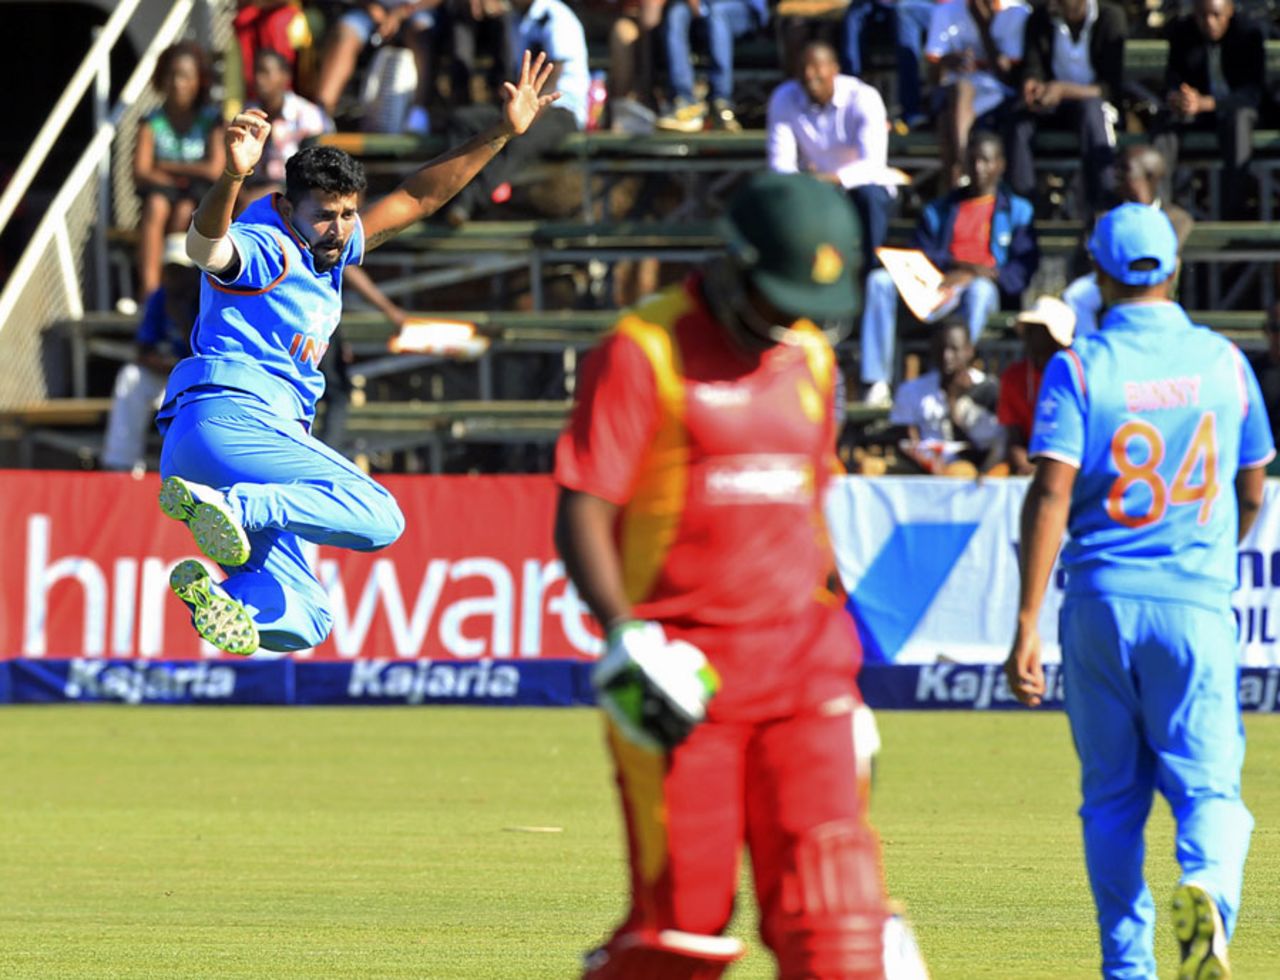 M Vijay clicks his heels together in celebration after dismissing Elton Chigumbura, Zimbabwe v India, 3rd ODI, Harare, July 14, 2015